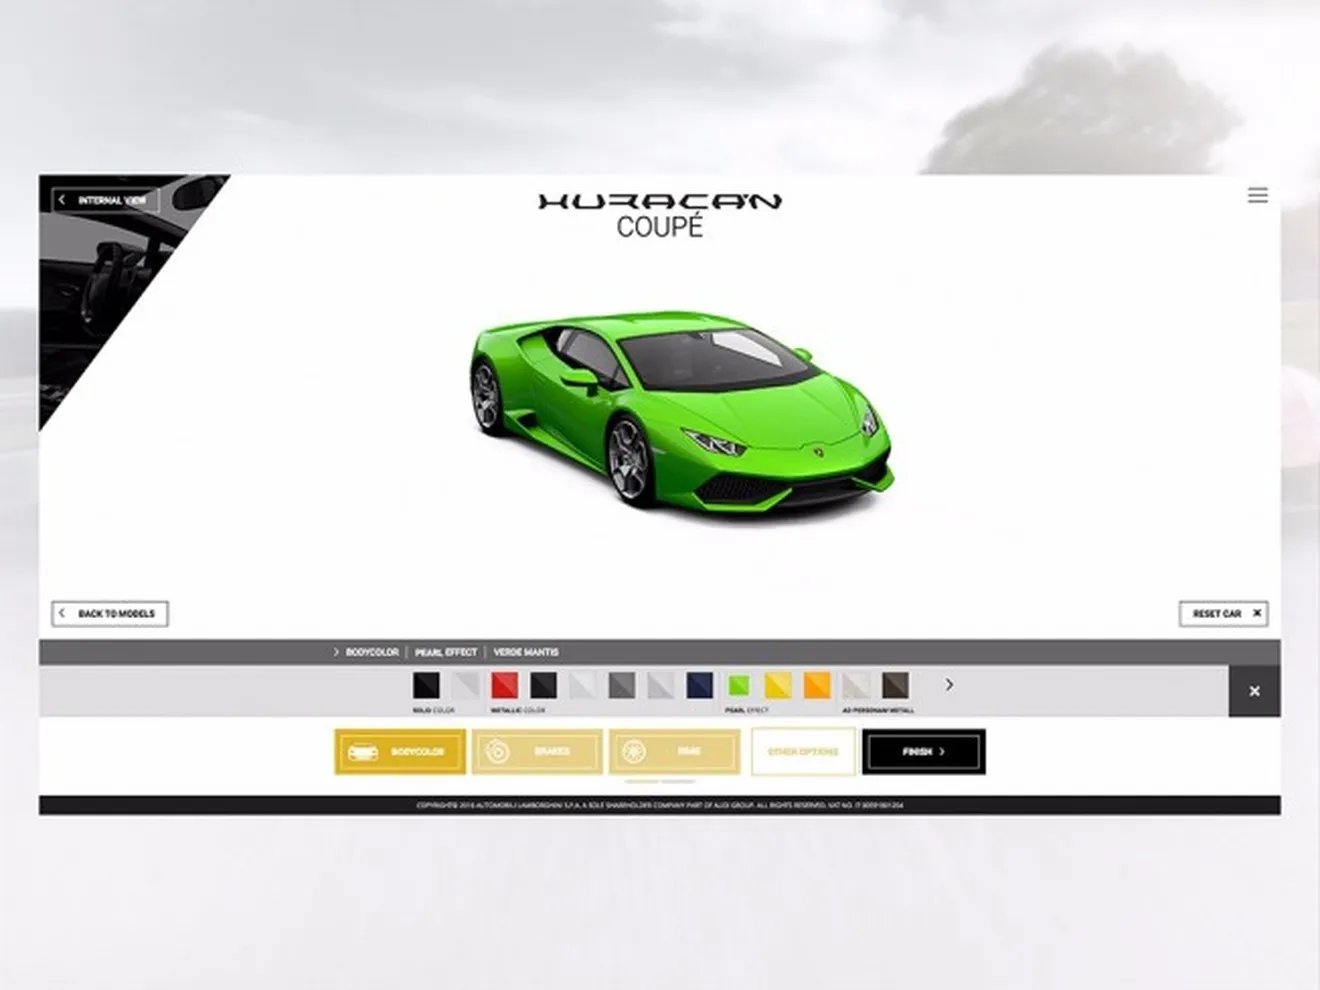 Lamborghini - nuevo configurador on-line